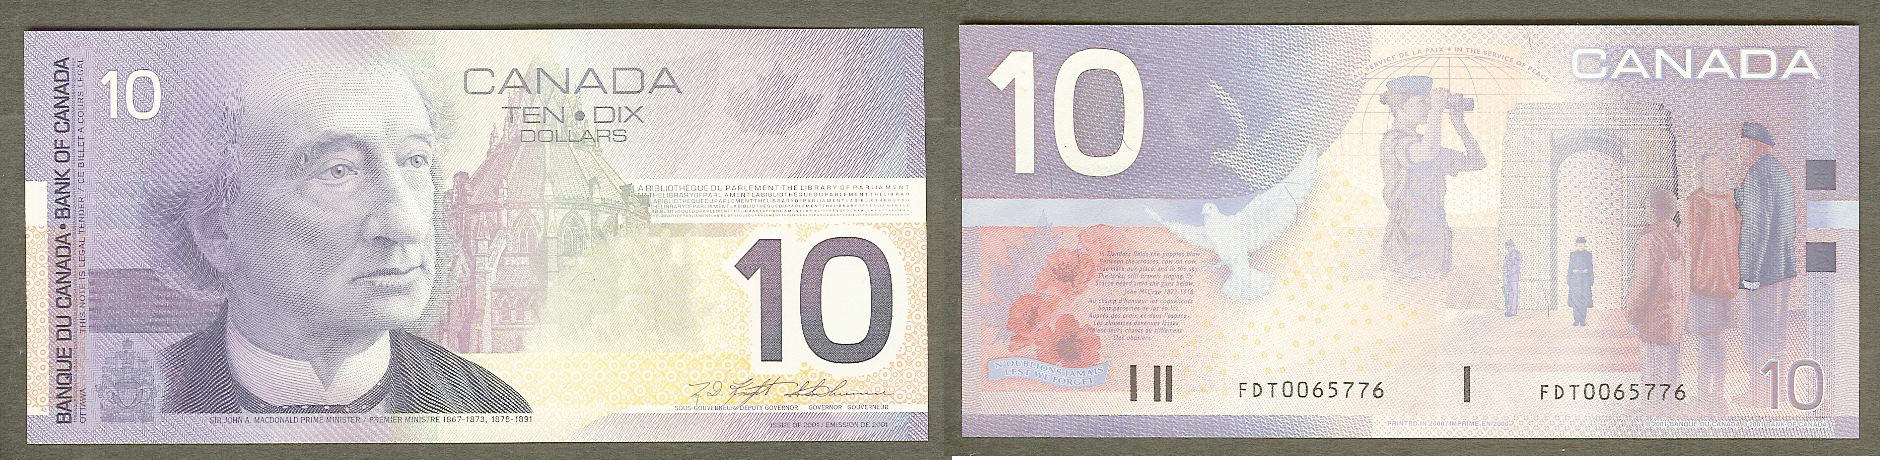 Canada $10 2001 Unc